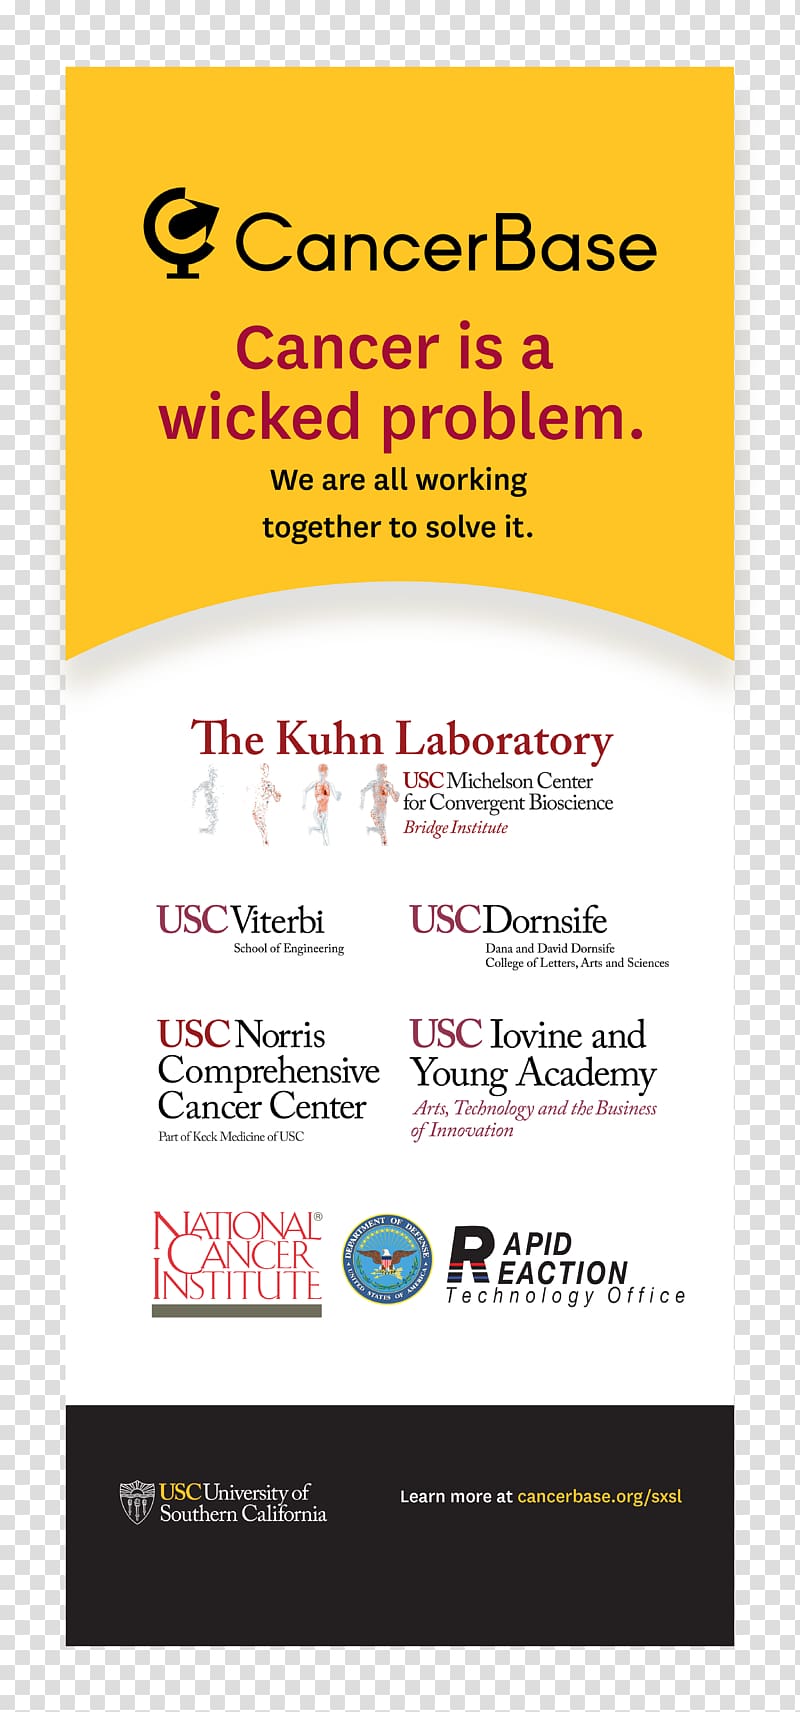 USC Norris Comprehensive Cancer Center Online advertising Brand NCI-designated Cancer Center, Kuhn transparent background PNG clipart